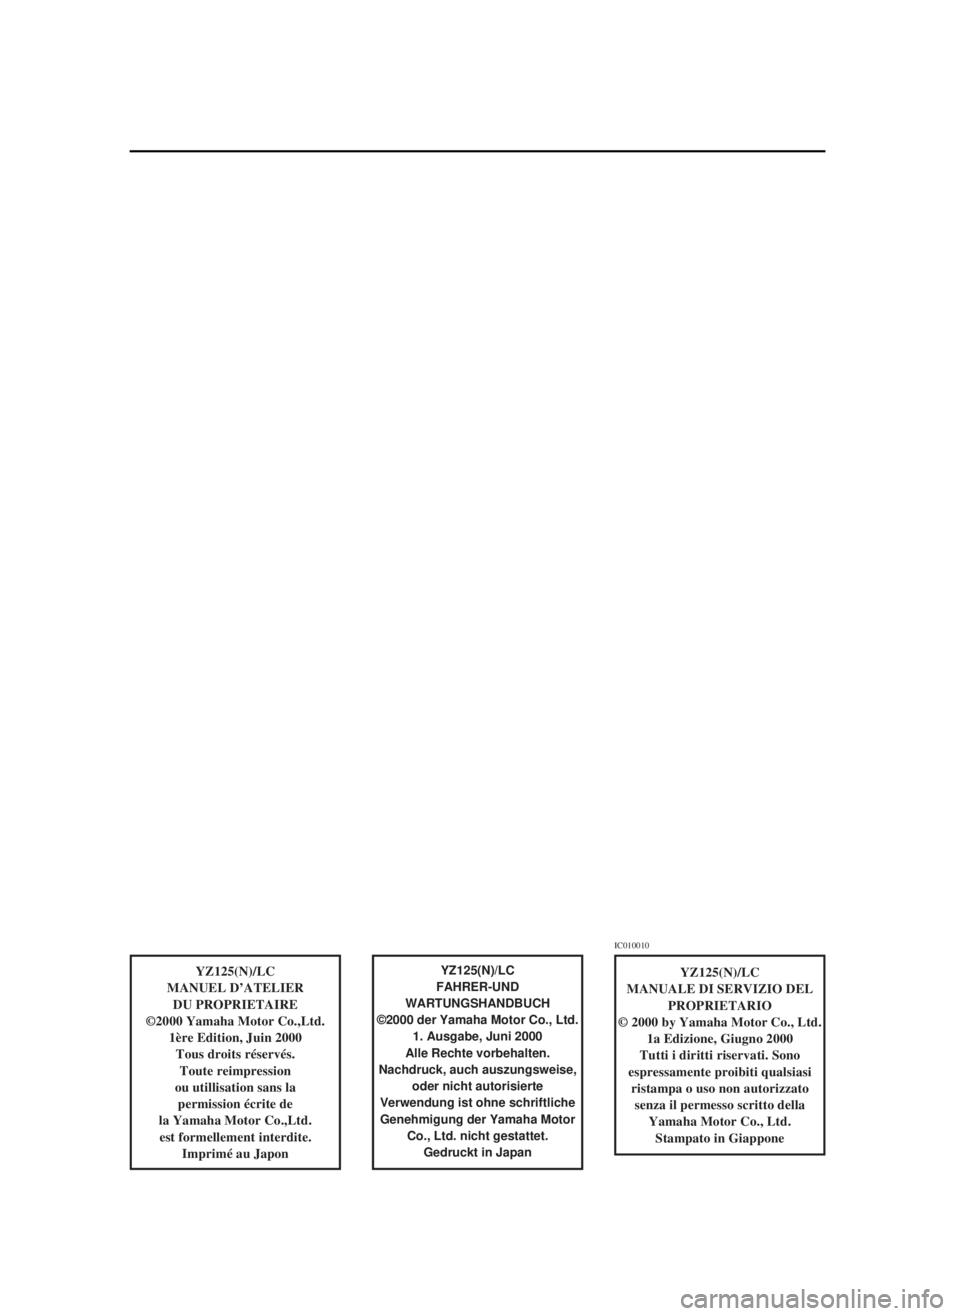 YAMAHA YZ125LC 2001  Owners Manual YZ125(N)/LC
MANUEL D’ATELIER
DU PROPRIETAIRE
©2000 Yamaha Motor Co.,Ltd.
1ère Edition, Juin 2000
Tous droits réservés.
Toute reimpression
ou utillisation sans la 
permission écrite de
la Yamaha